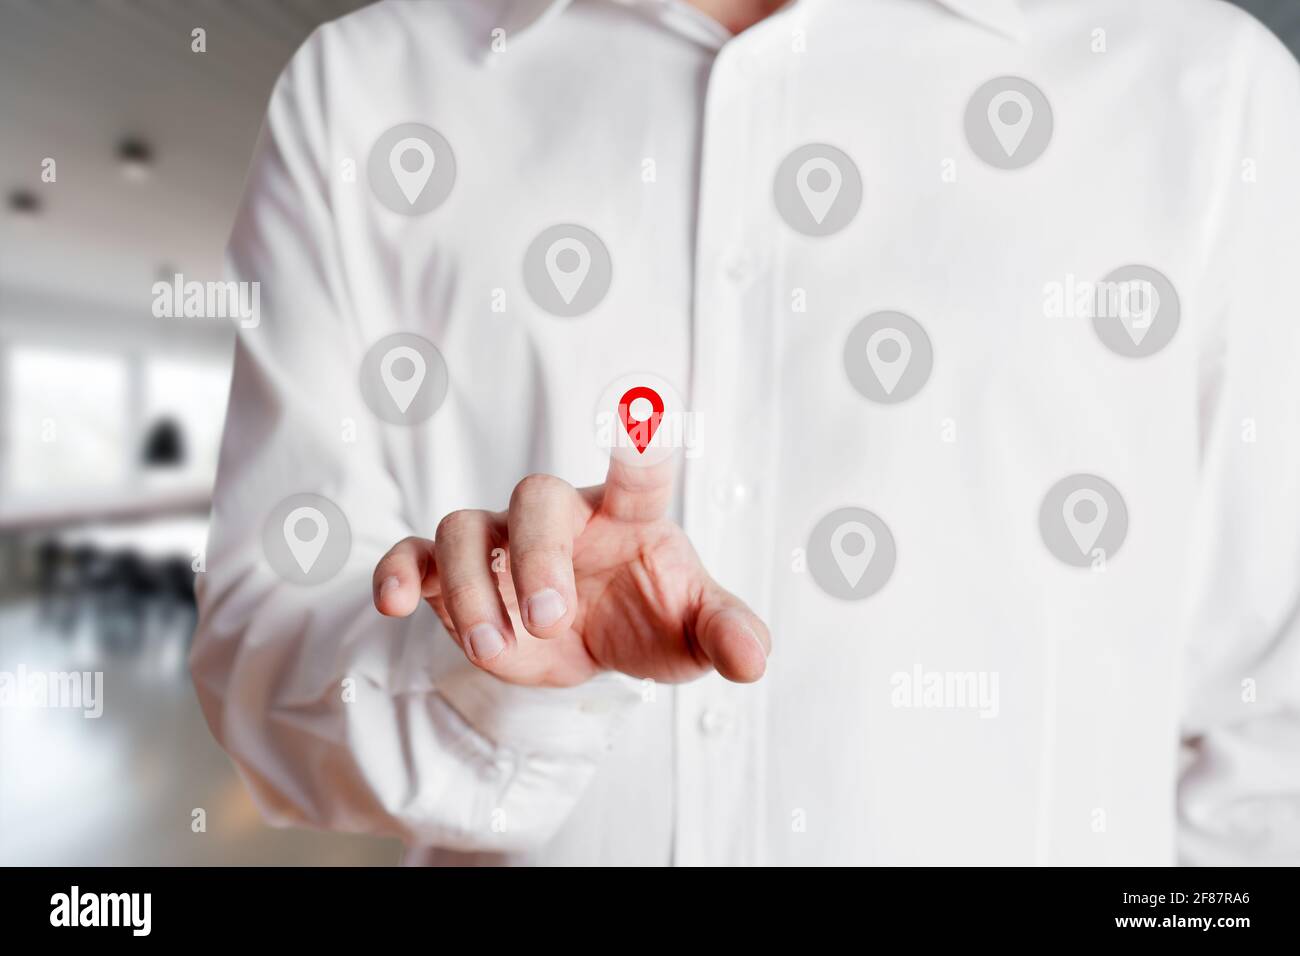 Homme d'affaires appuie sur et sélectionne un emplacement ou une icône de carte sur l'écran tactile virtuel. Notion : navigation par pointeur de carte Banque D'Images